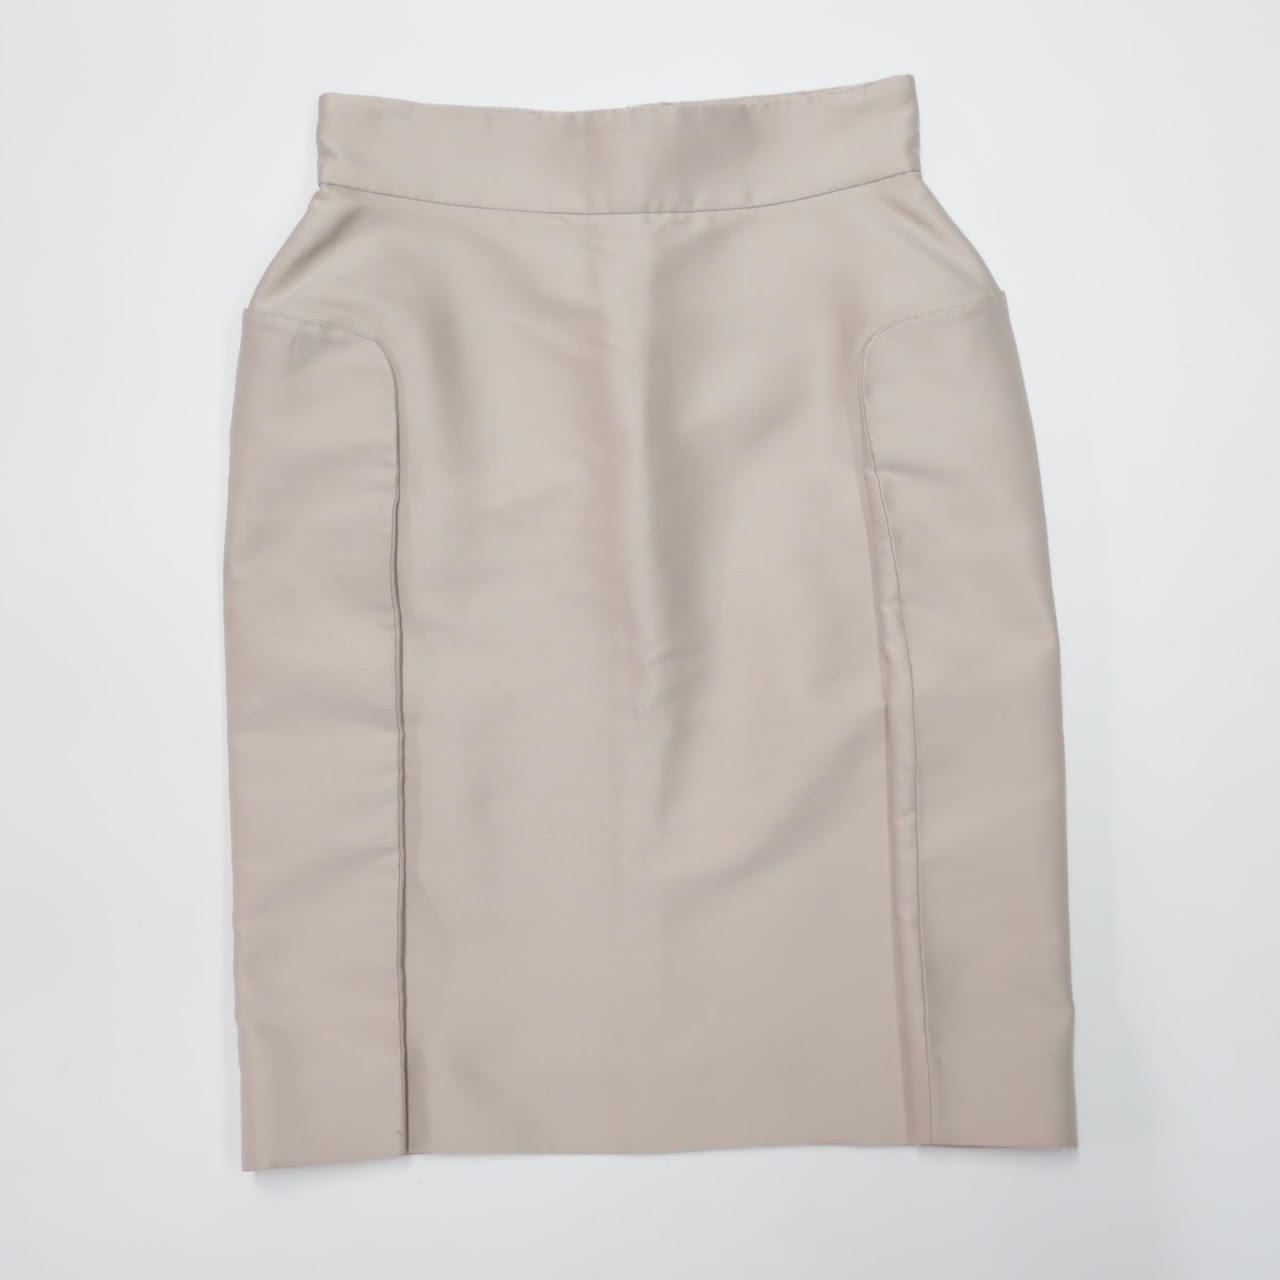 Yves Saint Laurent Beige Pencil Skirt